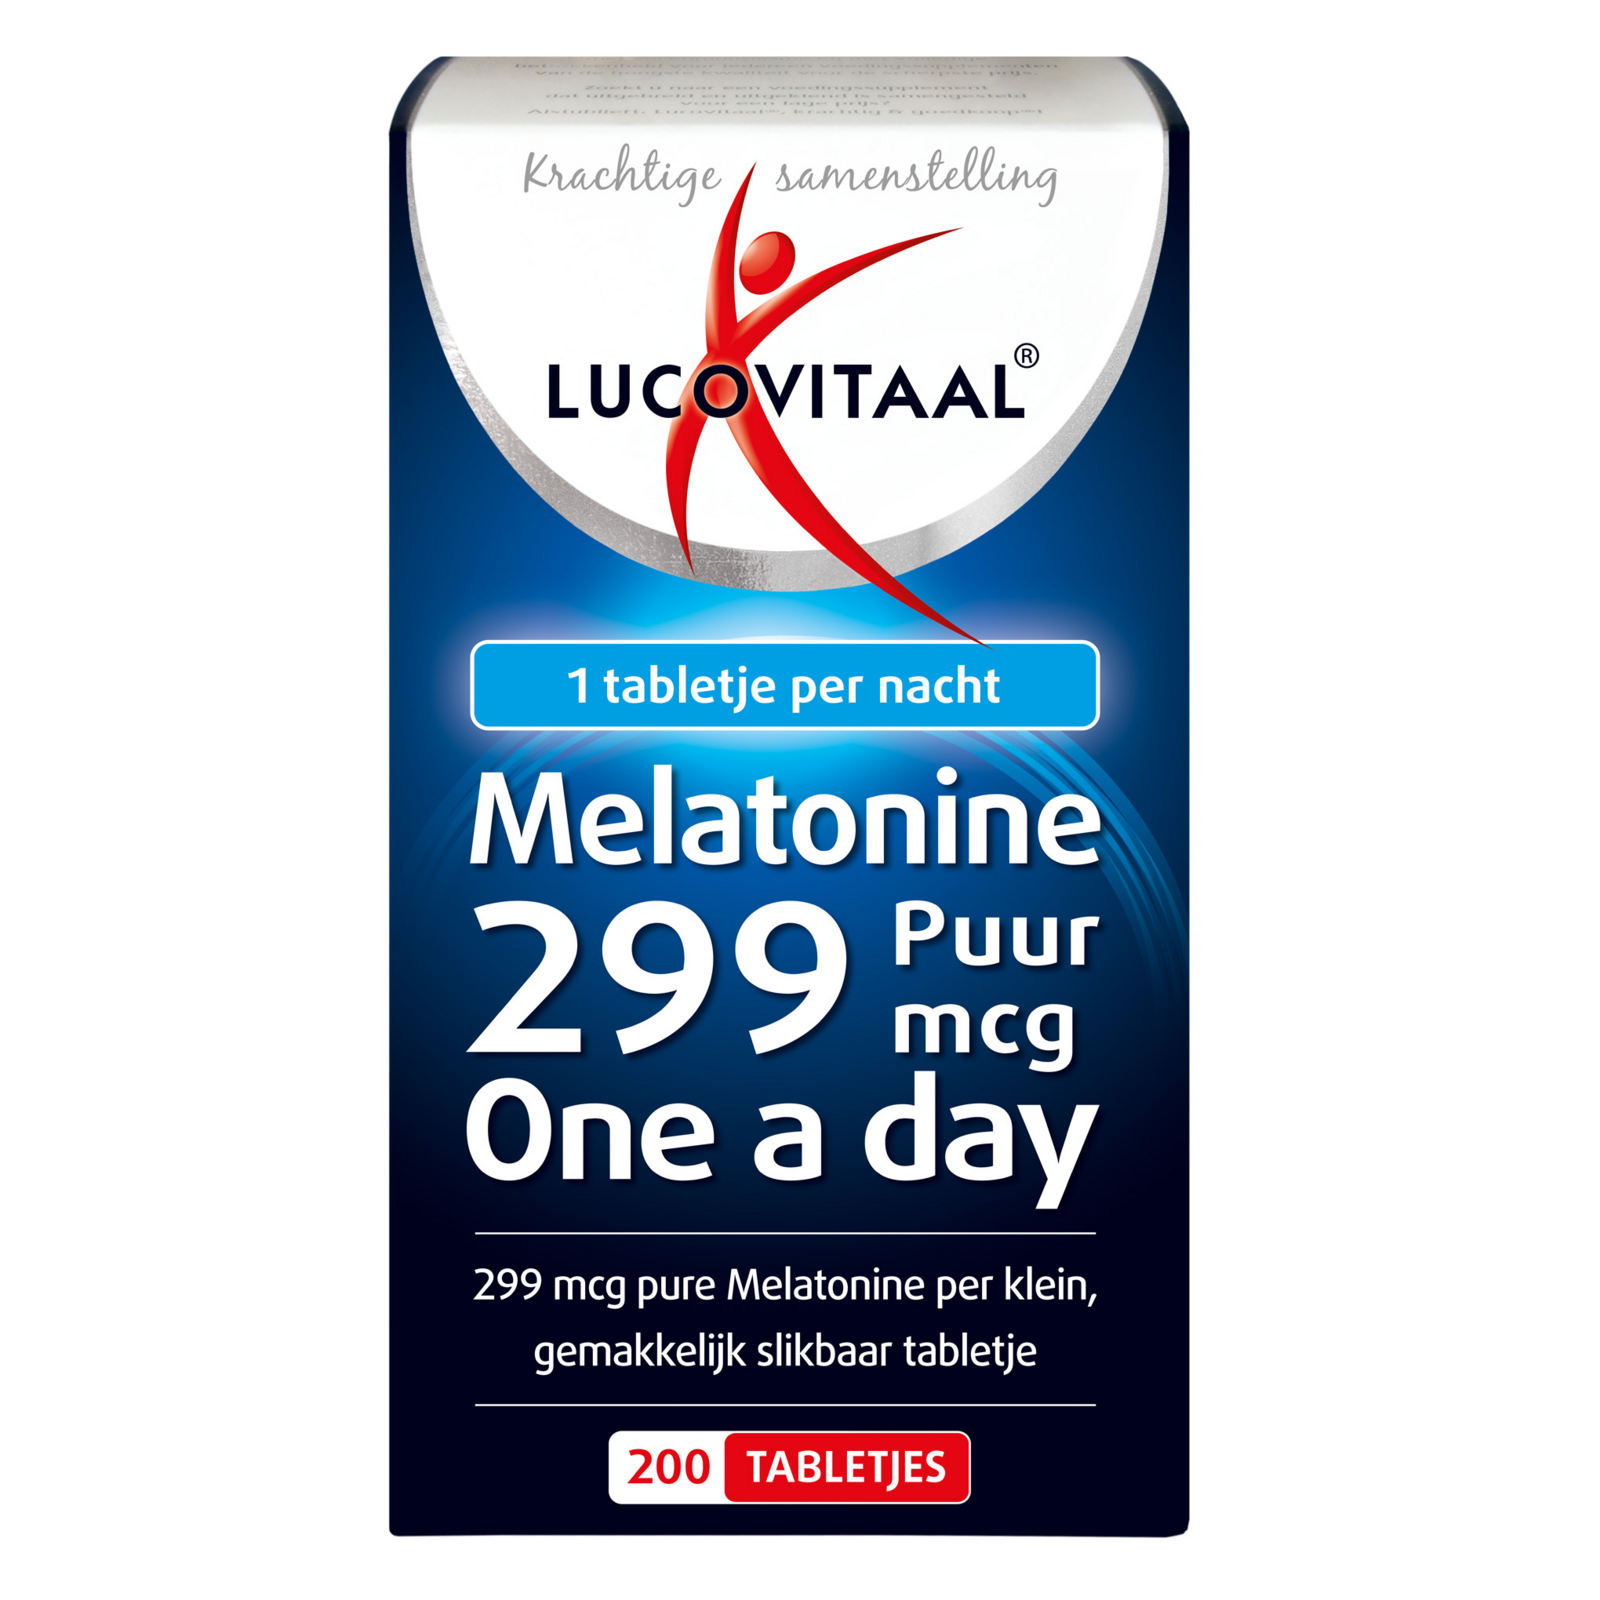 Lucovitaal melatonine puur 299mcg bevat 299mcg pure melatonine per gemakkelijk slikbare tablet. melatonine is ...